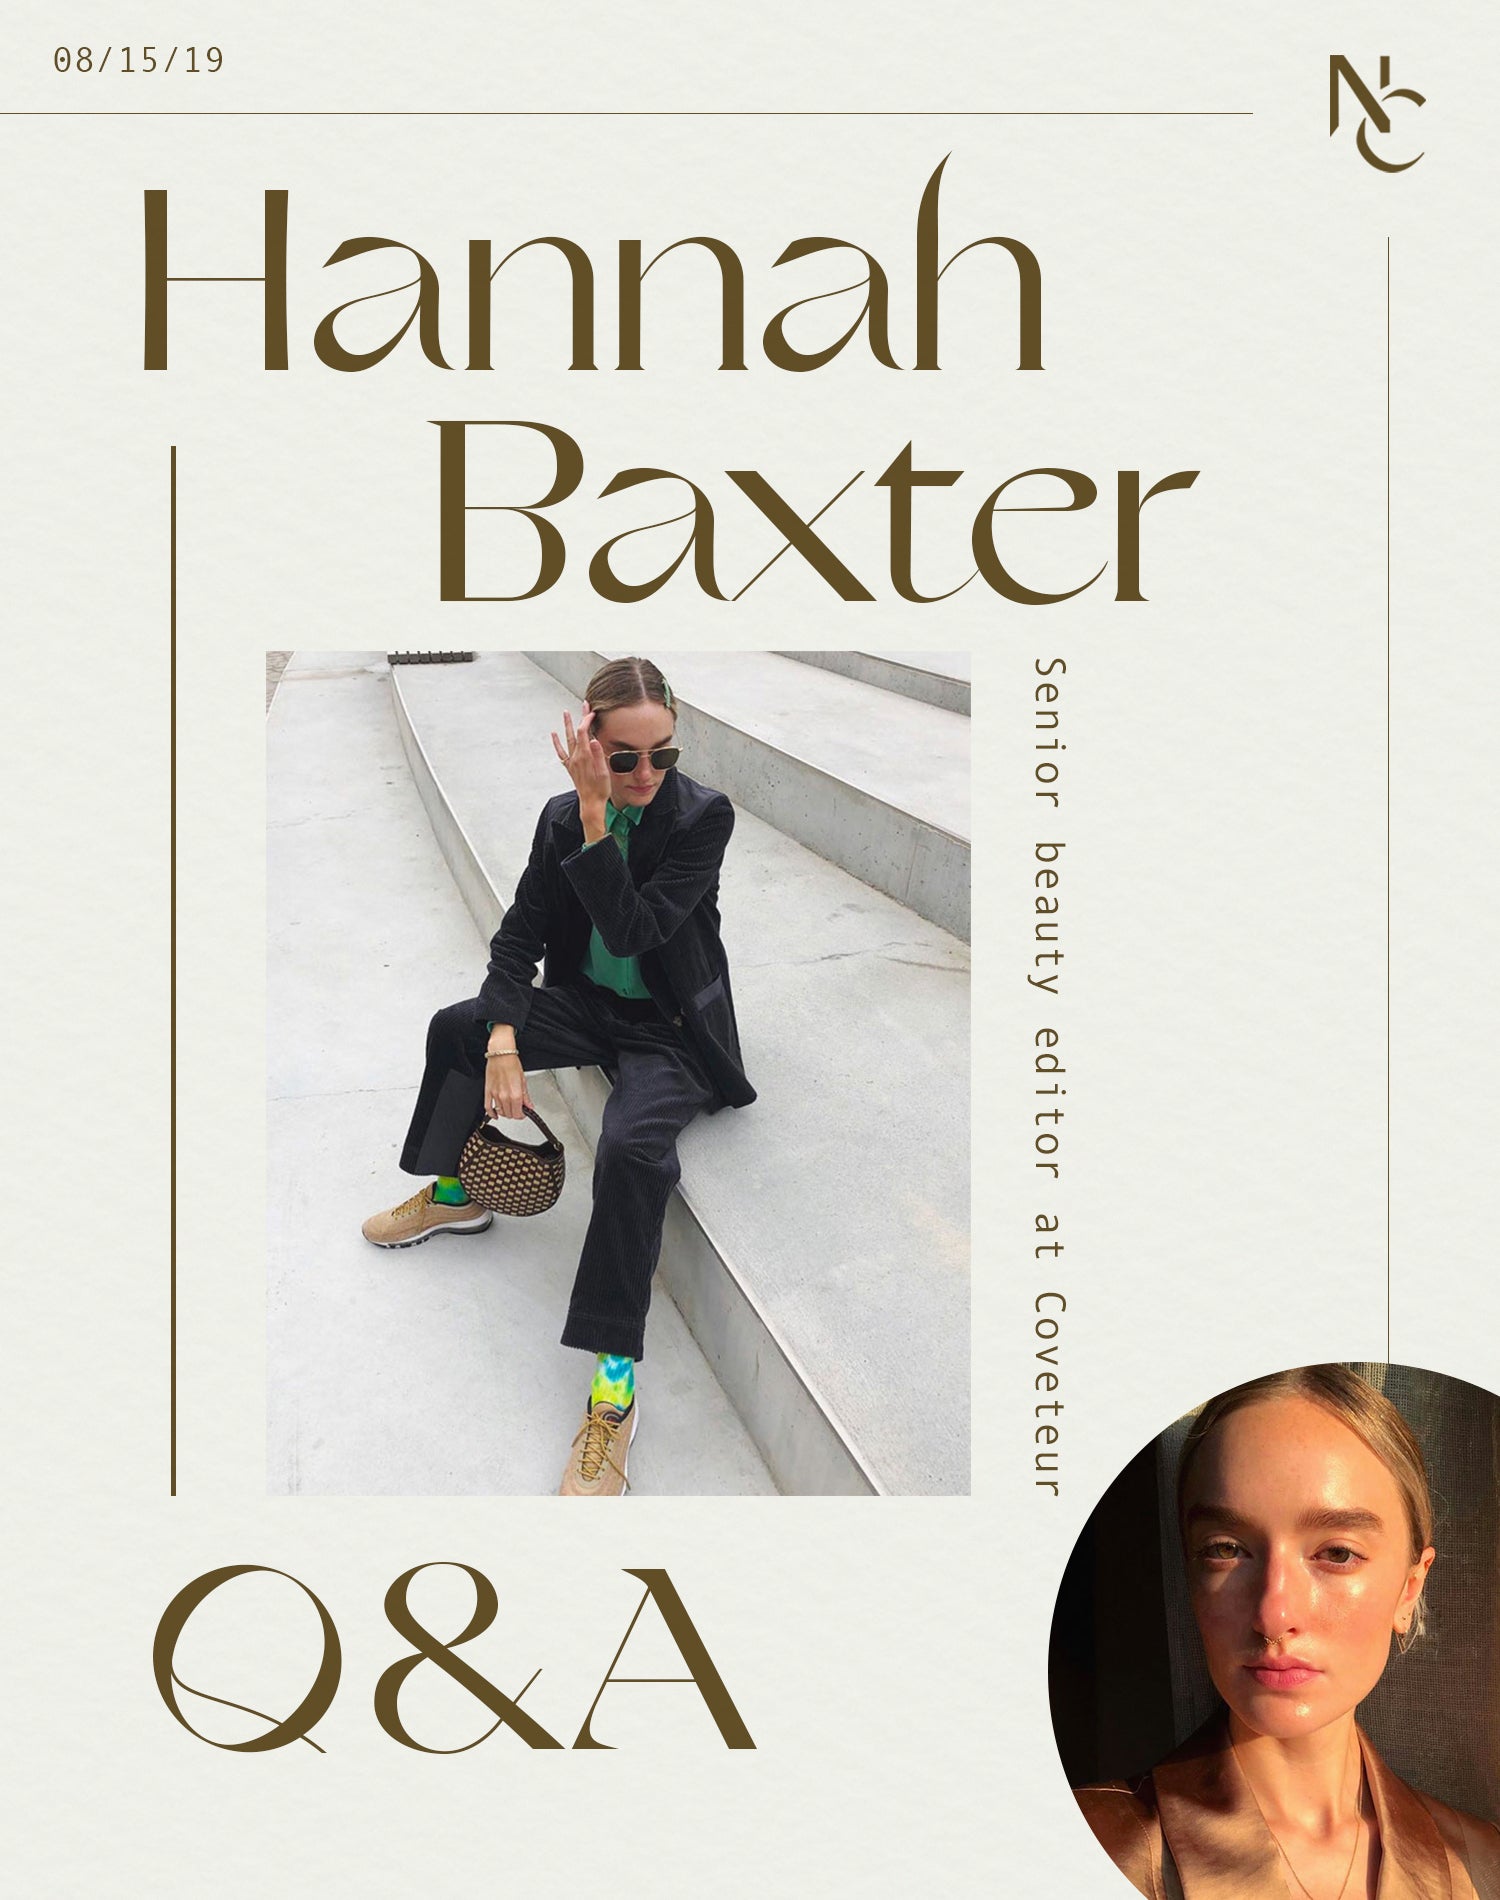 Q&A • Hannah Baxter